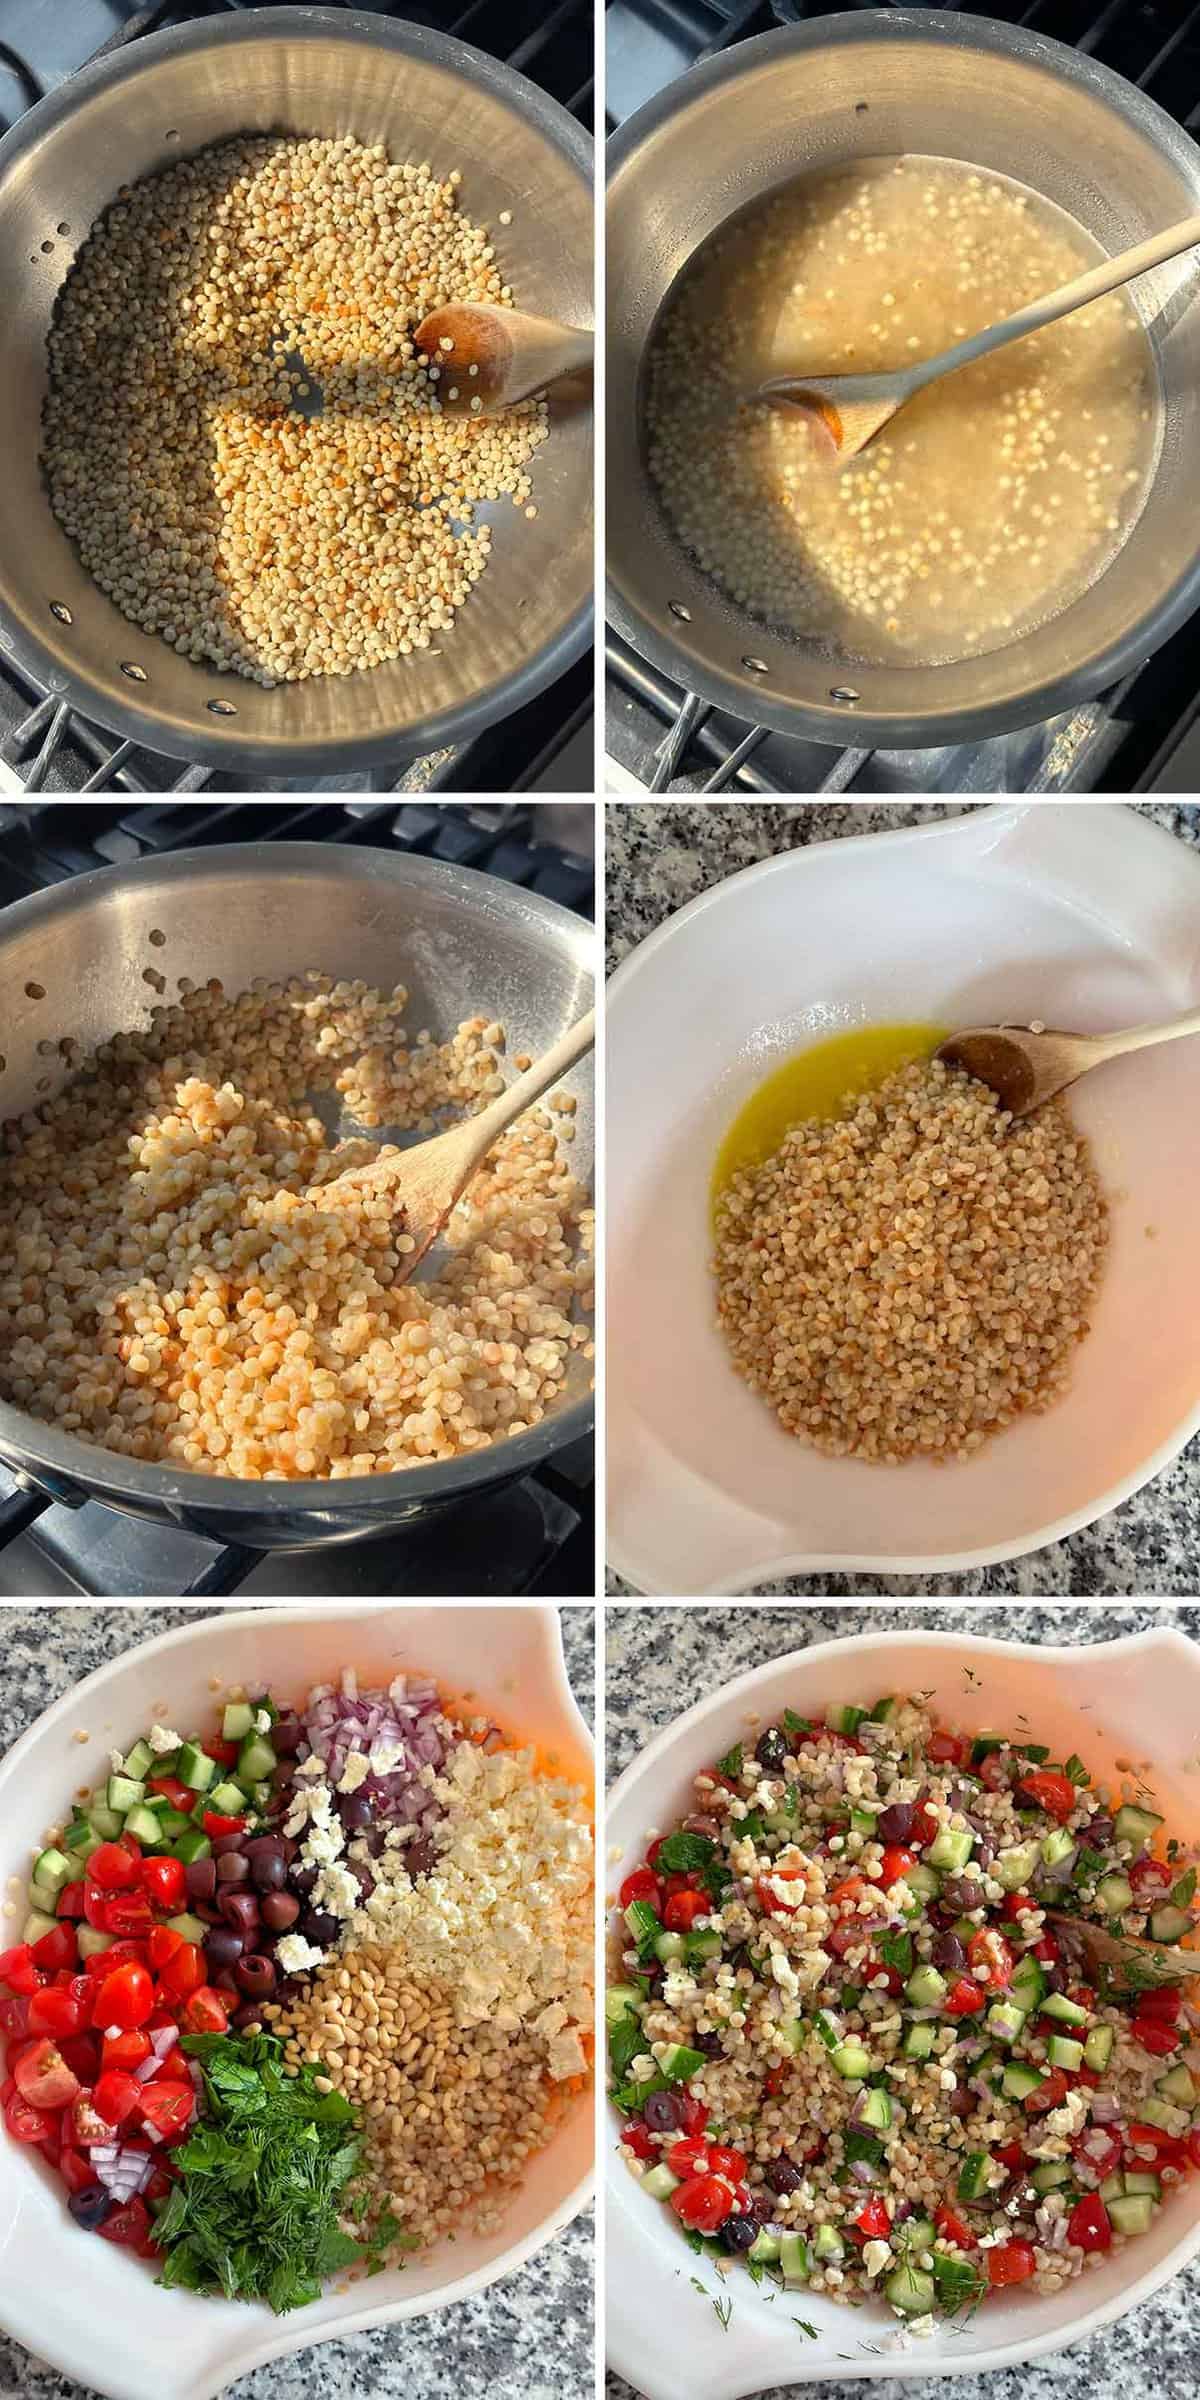 Traiter le collage montrant comment griller et cuisiner le couscous israélien, et le mélanger dans une salade de couscous méditerranéenne.